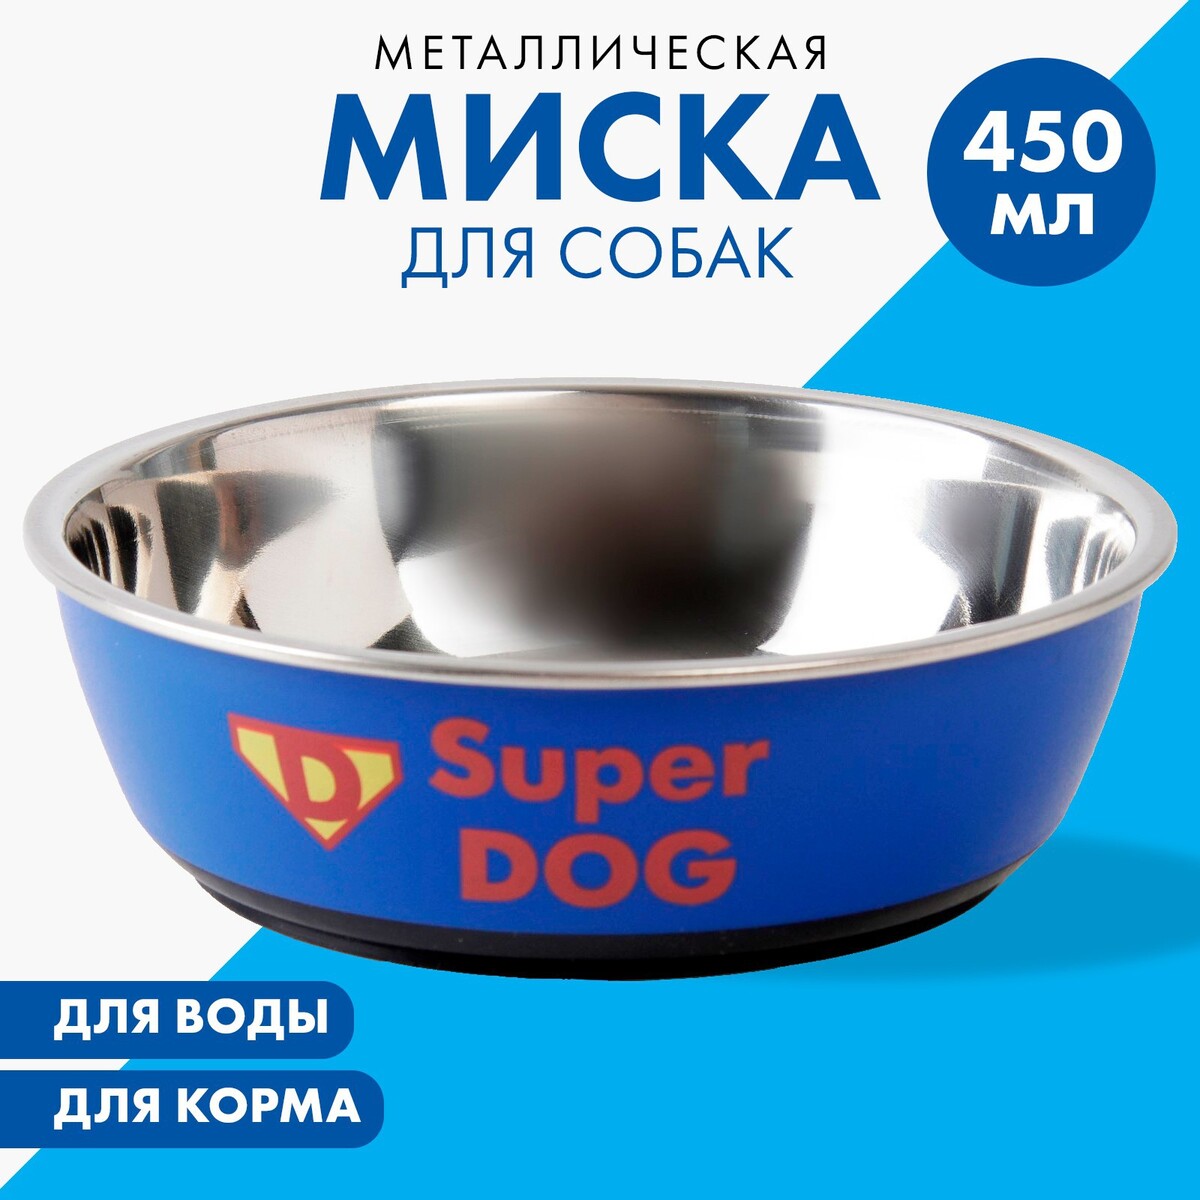 Миска металлическая для собаки super dog, 450 мл, 14х4.5 см паста для моделирования fila giotto be be super modelling dough 100г белый синий зеленый